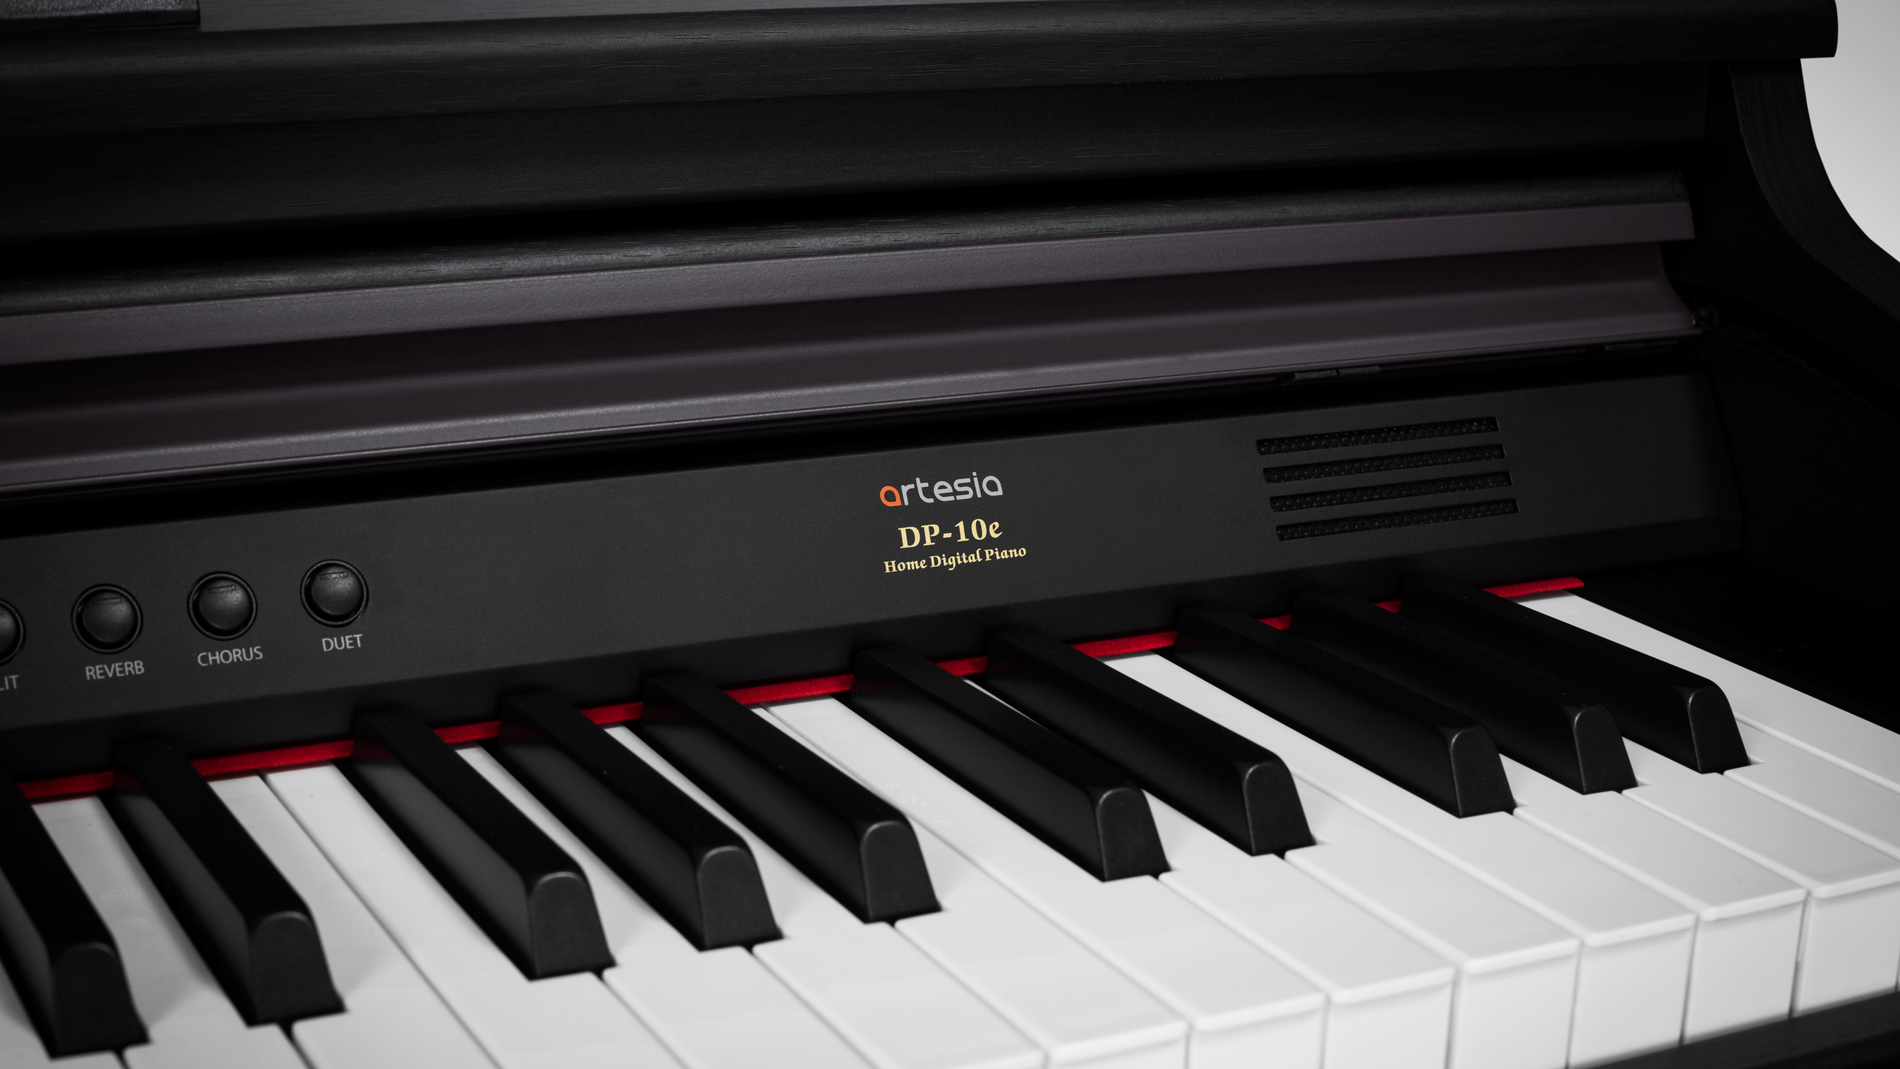 DP-10e Digital Piano - Artesia Pro